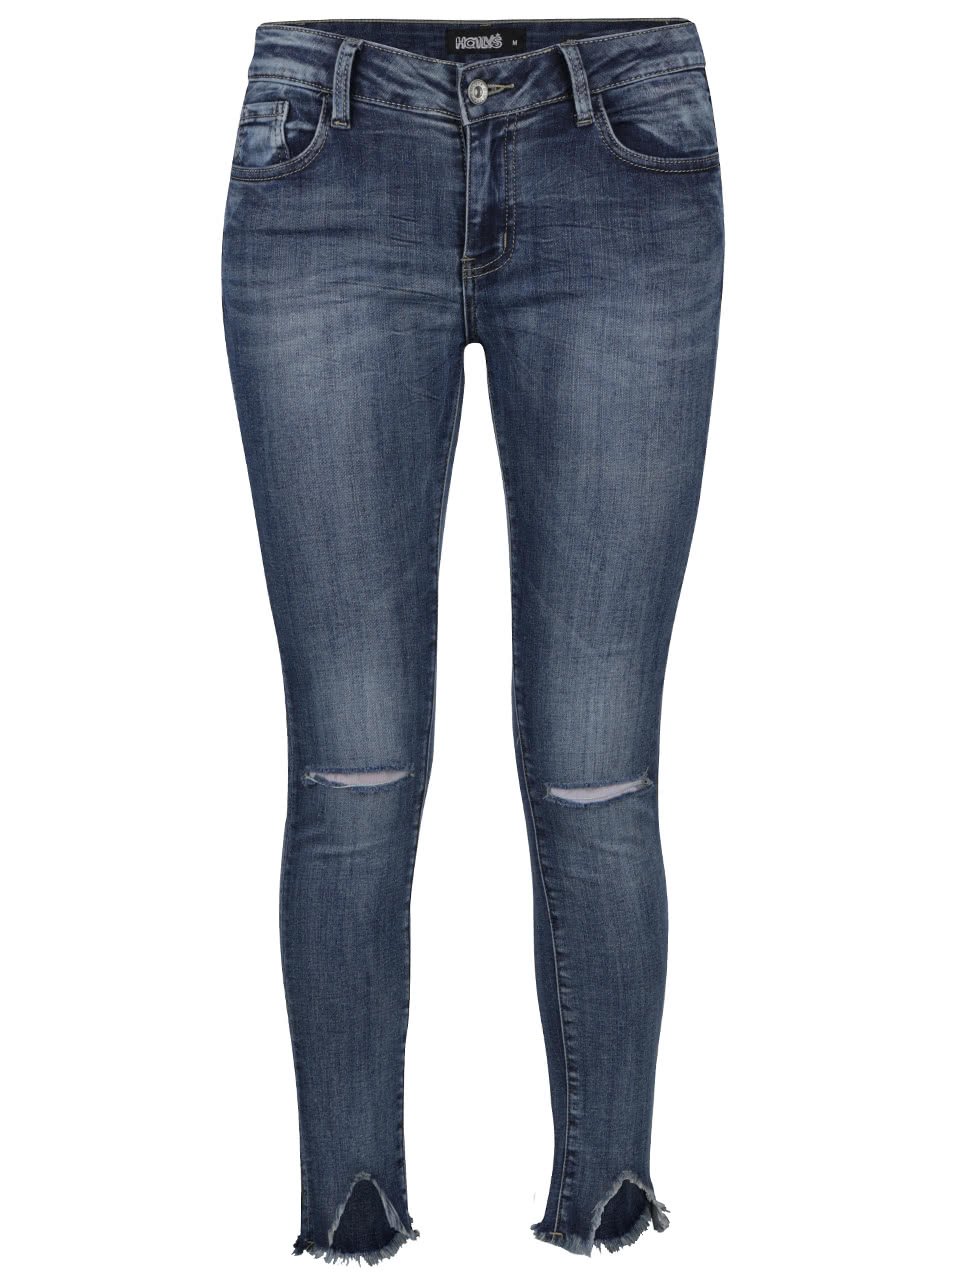 Modré džíny s roztřepenými nohavicemi Haily´s Wiona